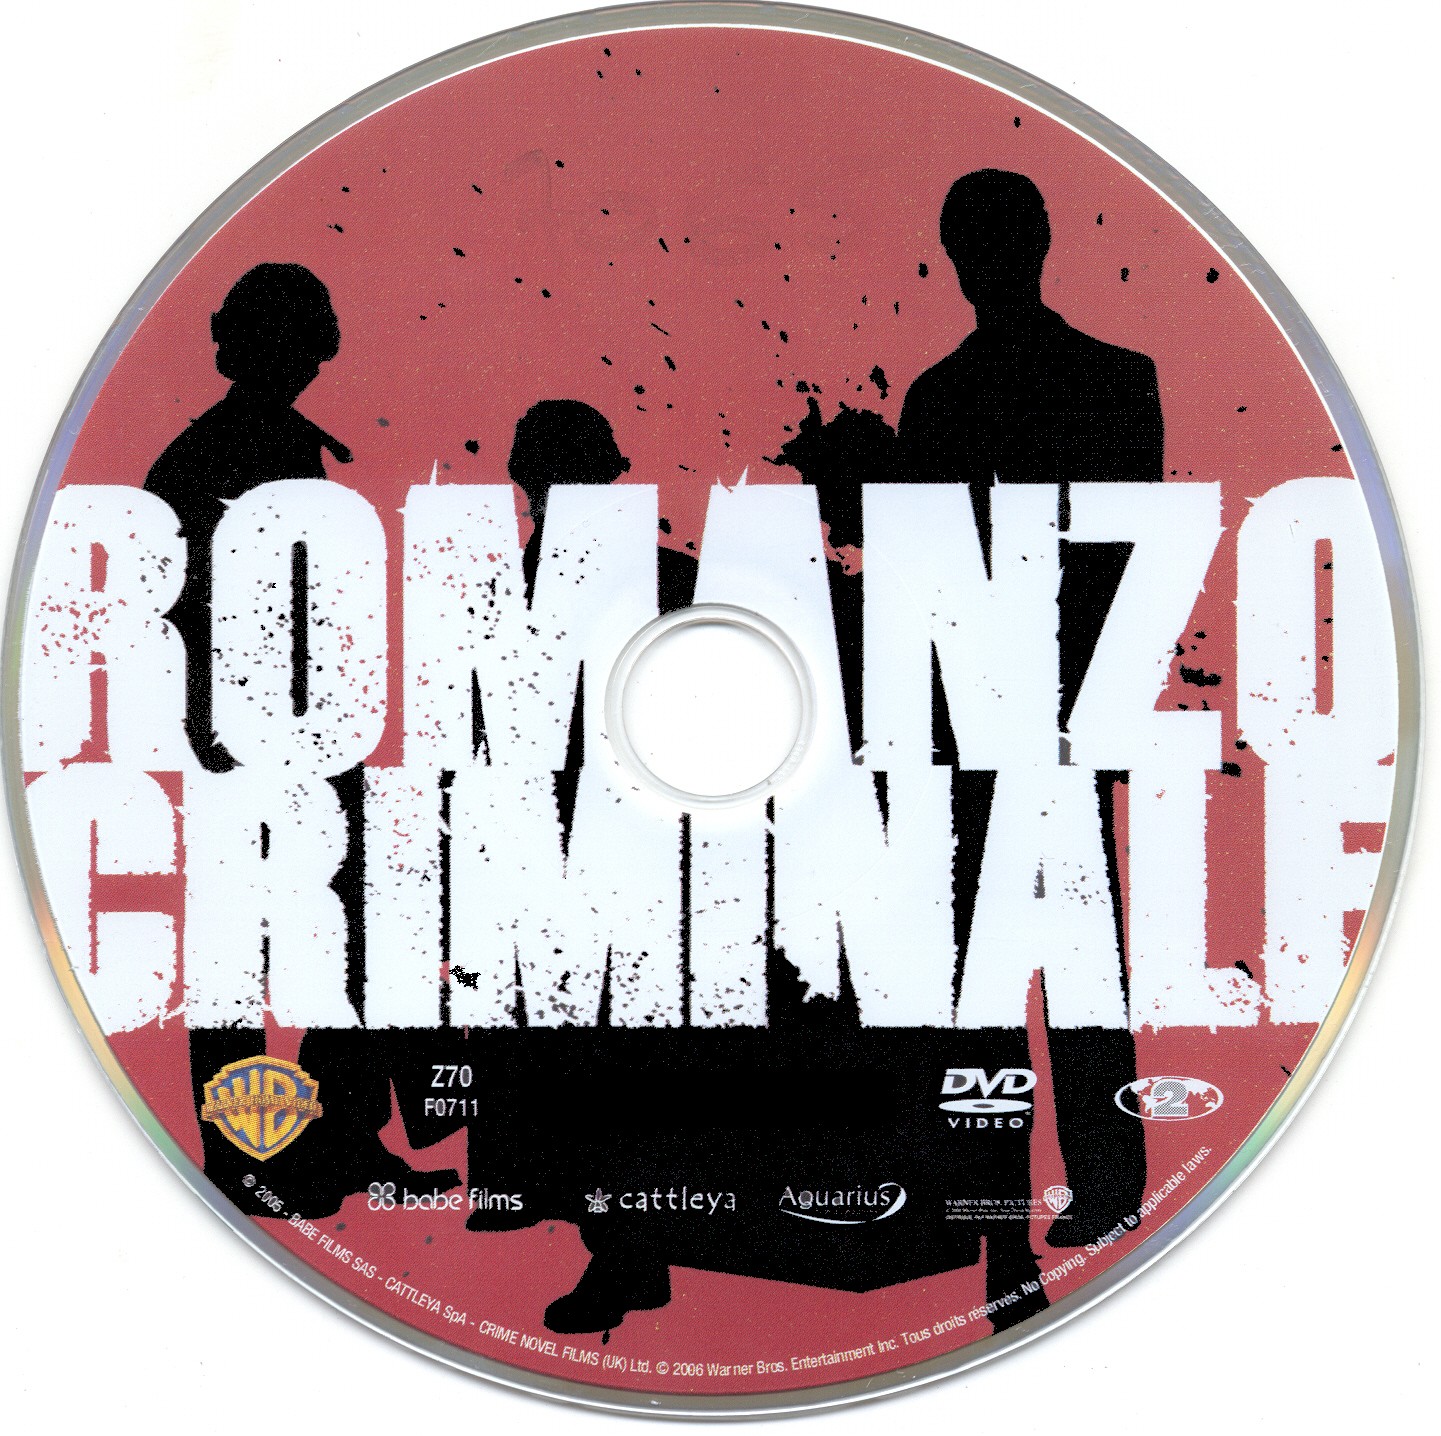 Romanzo criminale